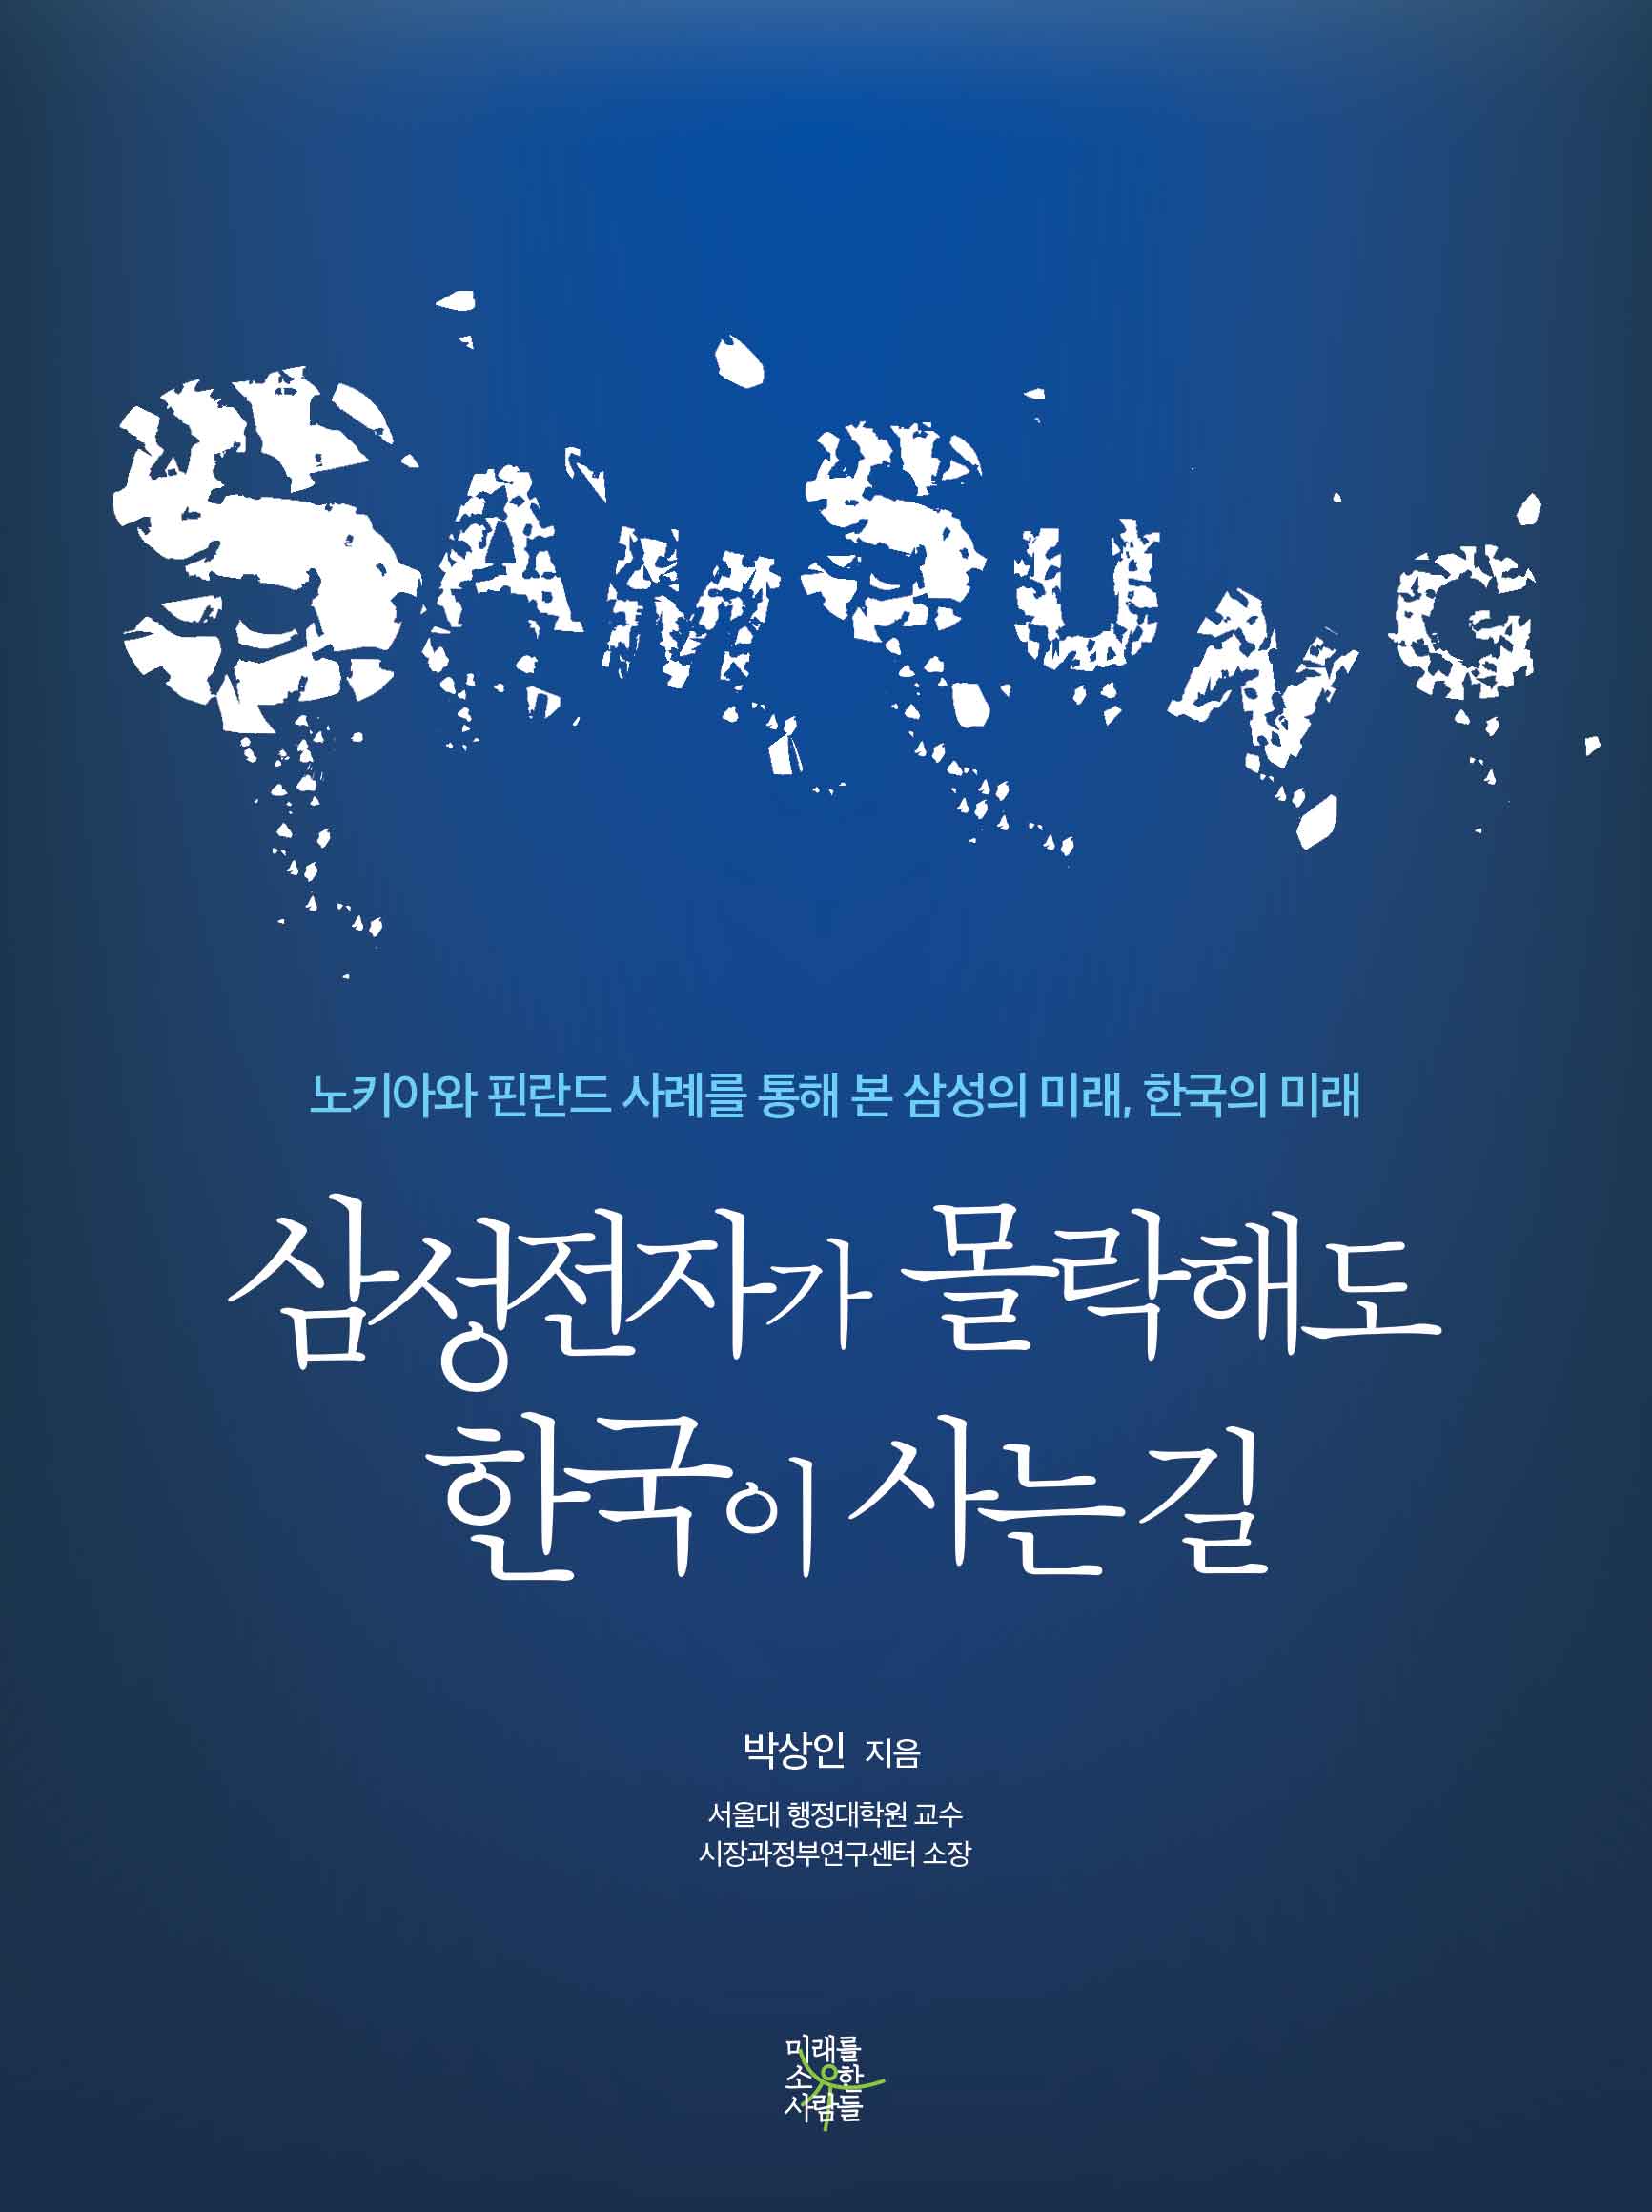 삼성전자가 몰락해도 한국이 사는 길 : 노키아와 핀란드 사례를 통해 본 삼성의 미래, 한국의 미래  